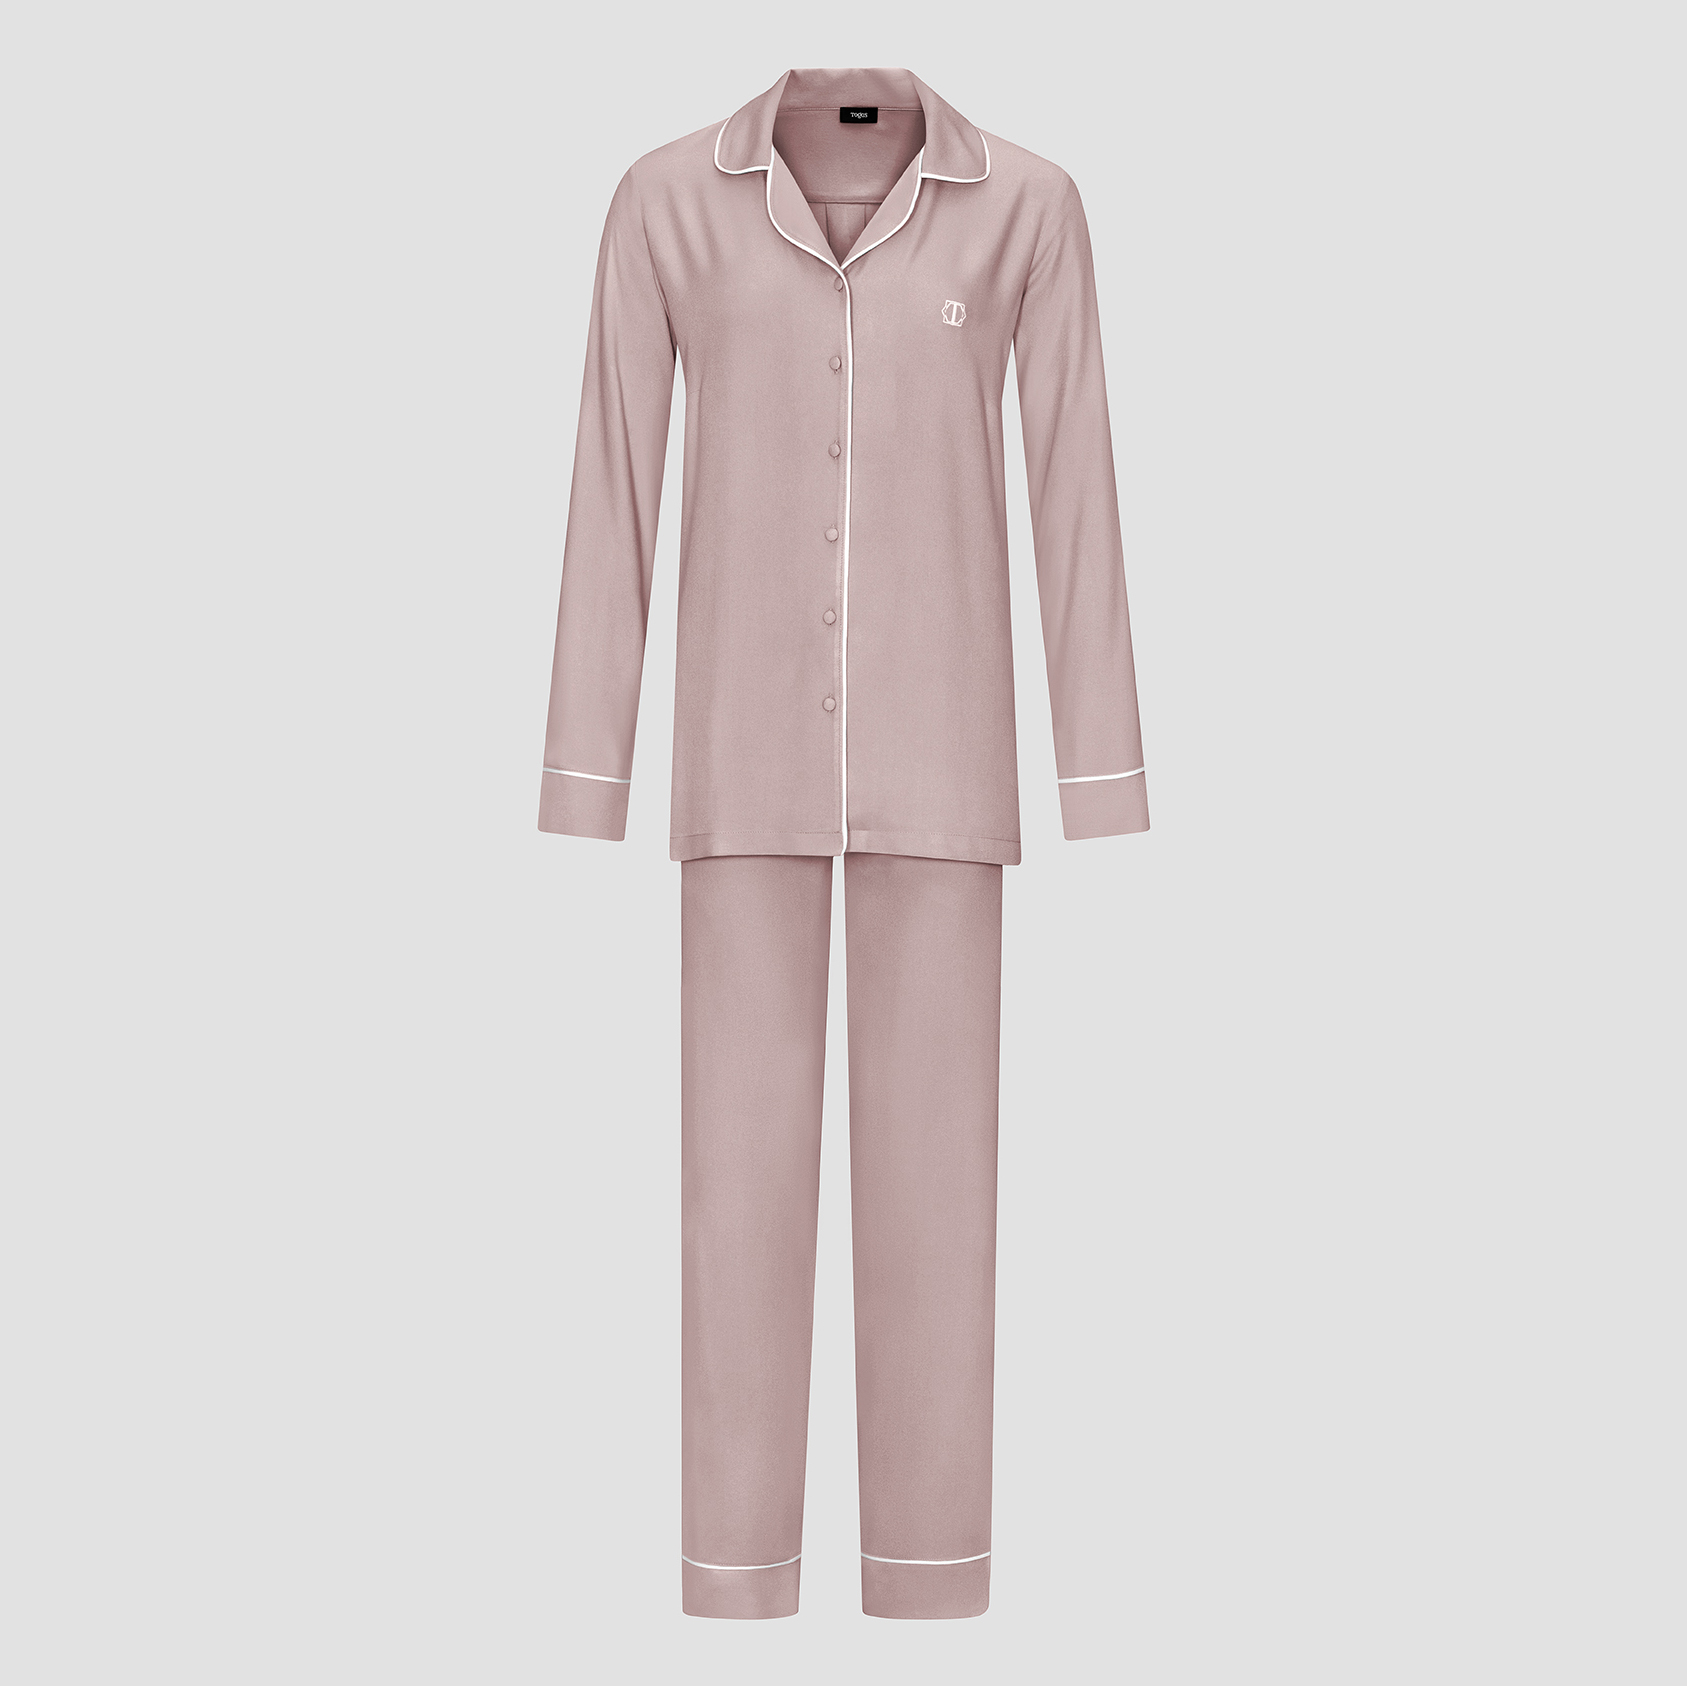 Пижама женская Togas Рамель розовая 2 предмета жен пижама арт 17 0309 персиковый р 46